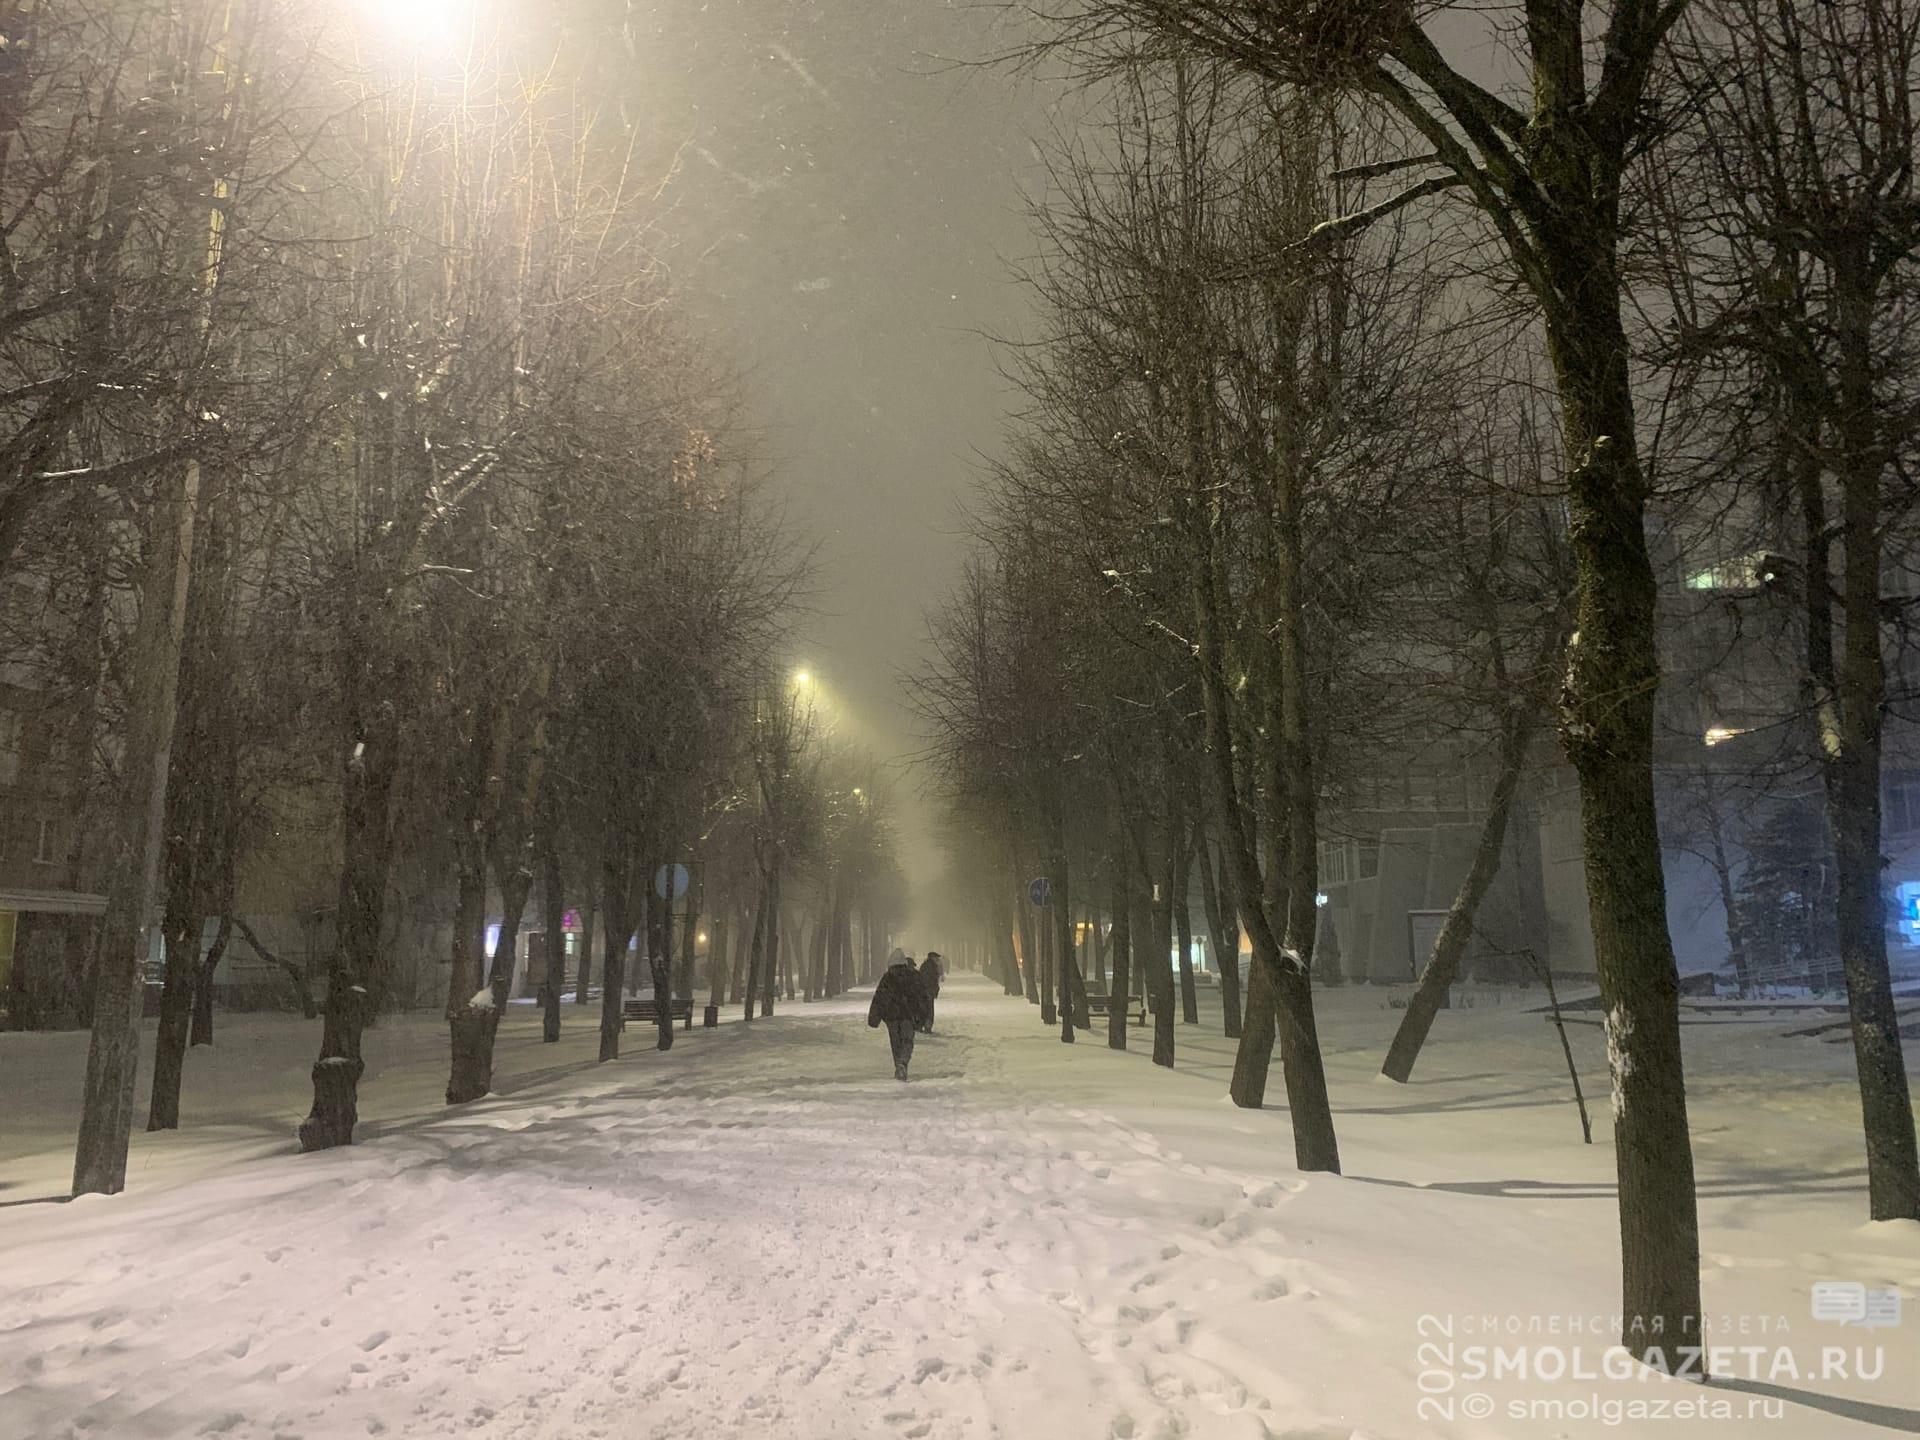 21 ноября в Смоленской области пройдет небольшой снег